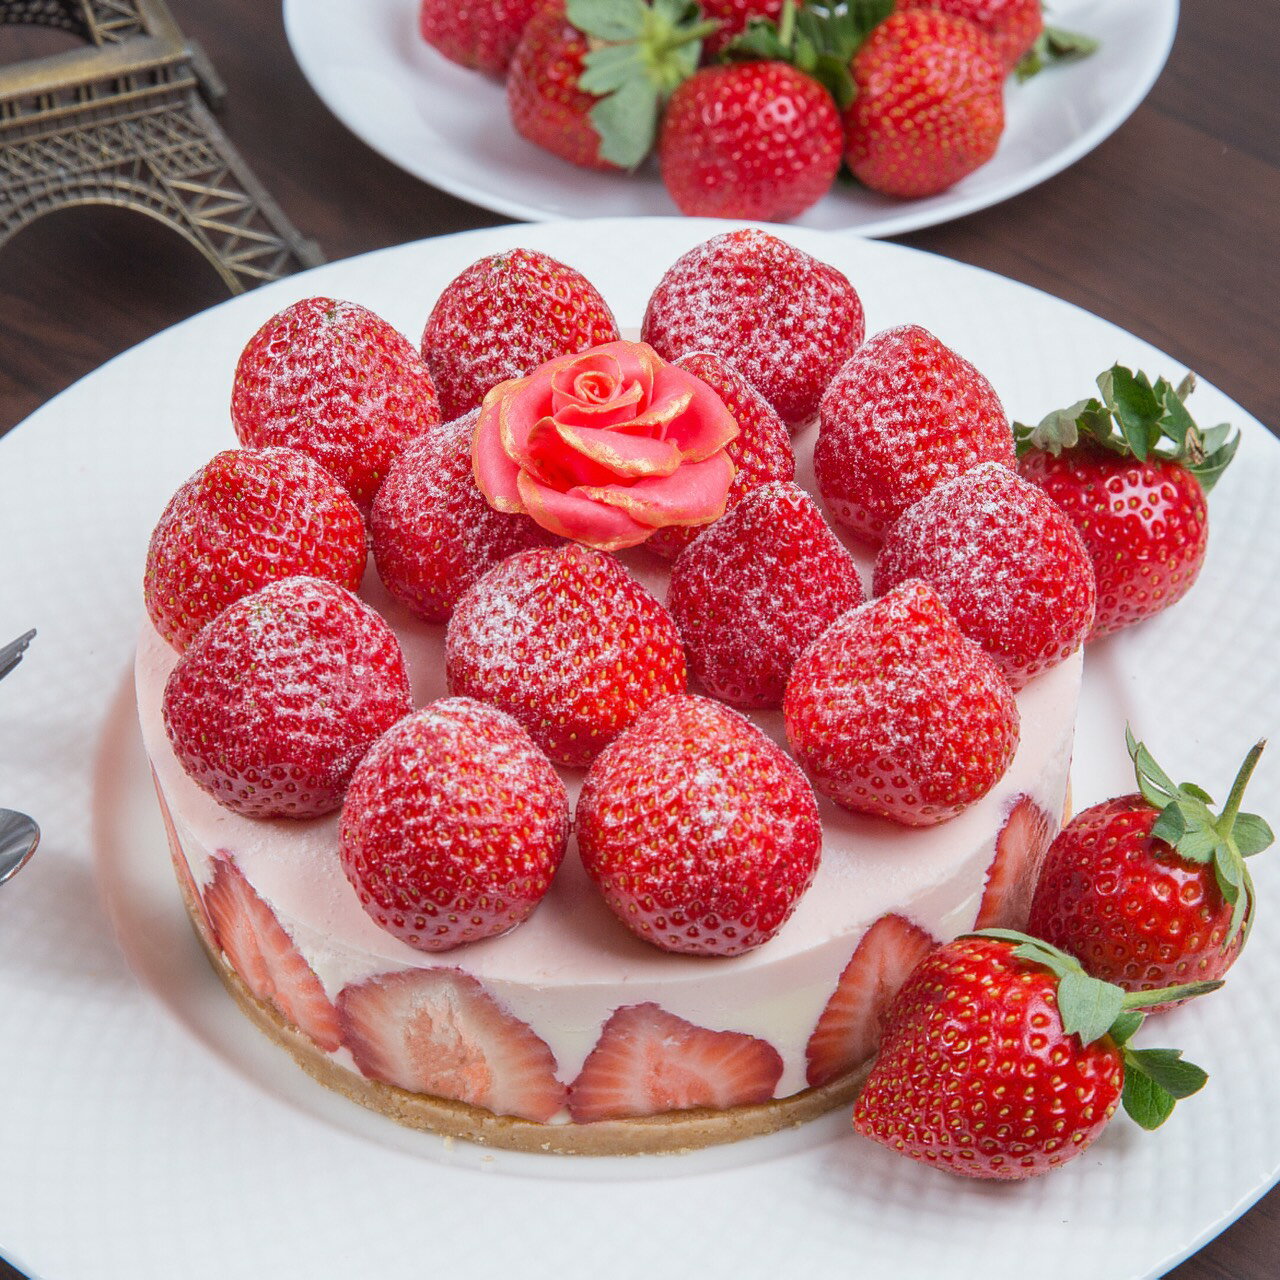 美味可口的草莓蛋糕 高清壁纸14 - 1024x768 壁纸下载 - 美味可口的草莓蛋糕 高清壁纸 - 其它壁纸 - V3壁纸站